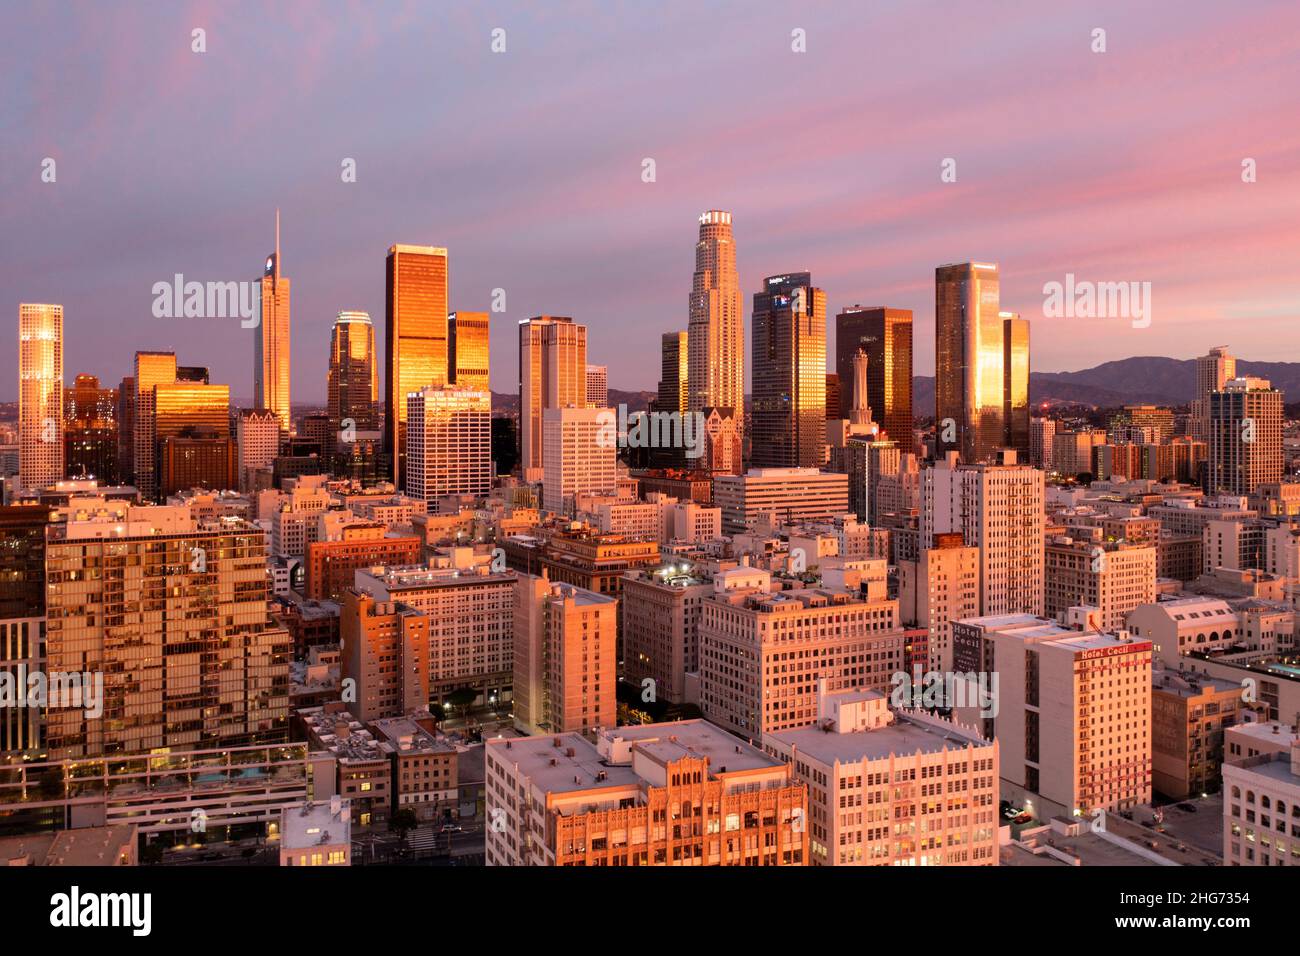 Luftaufnahme eines erstaunlichen rosa und goldenen Sonnenaufgangs, der sich in den Türmen der Innenstadt von Los Angeles widerspiegelt Stockfoto